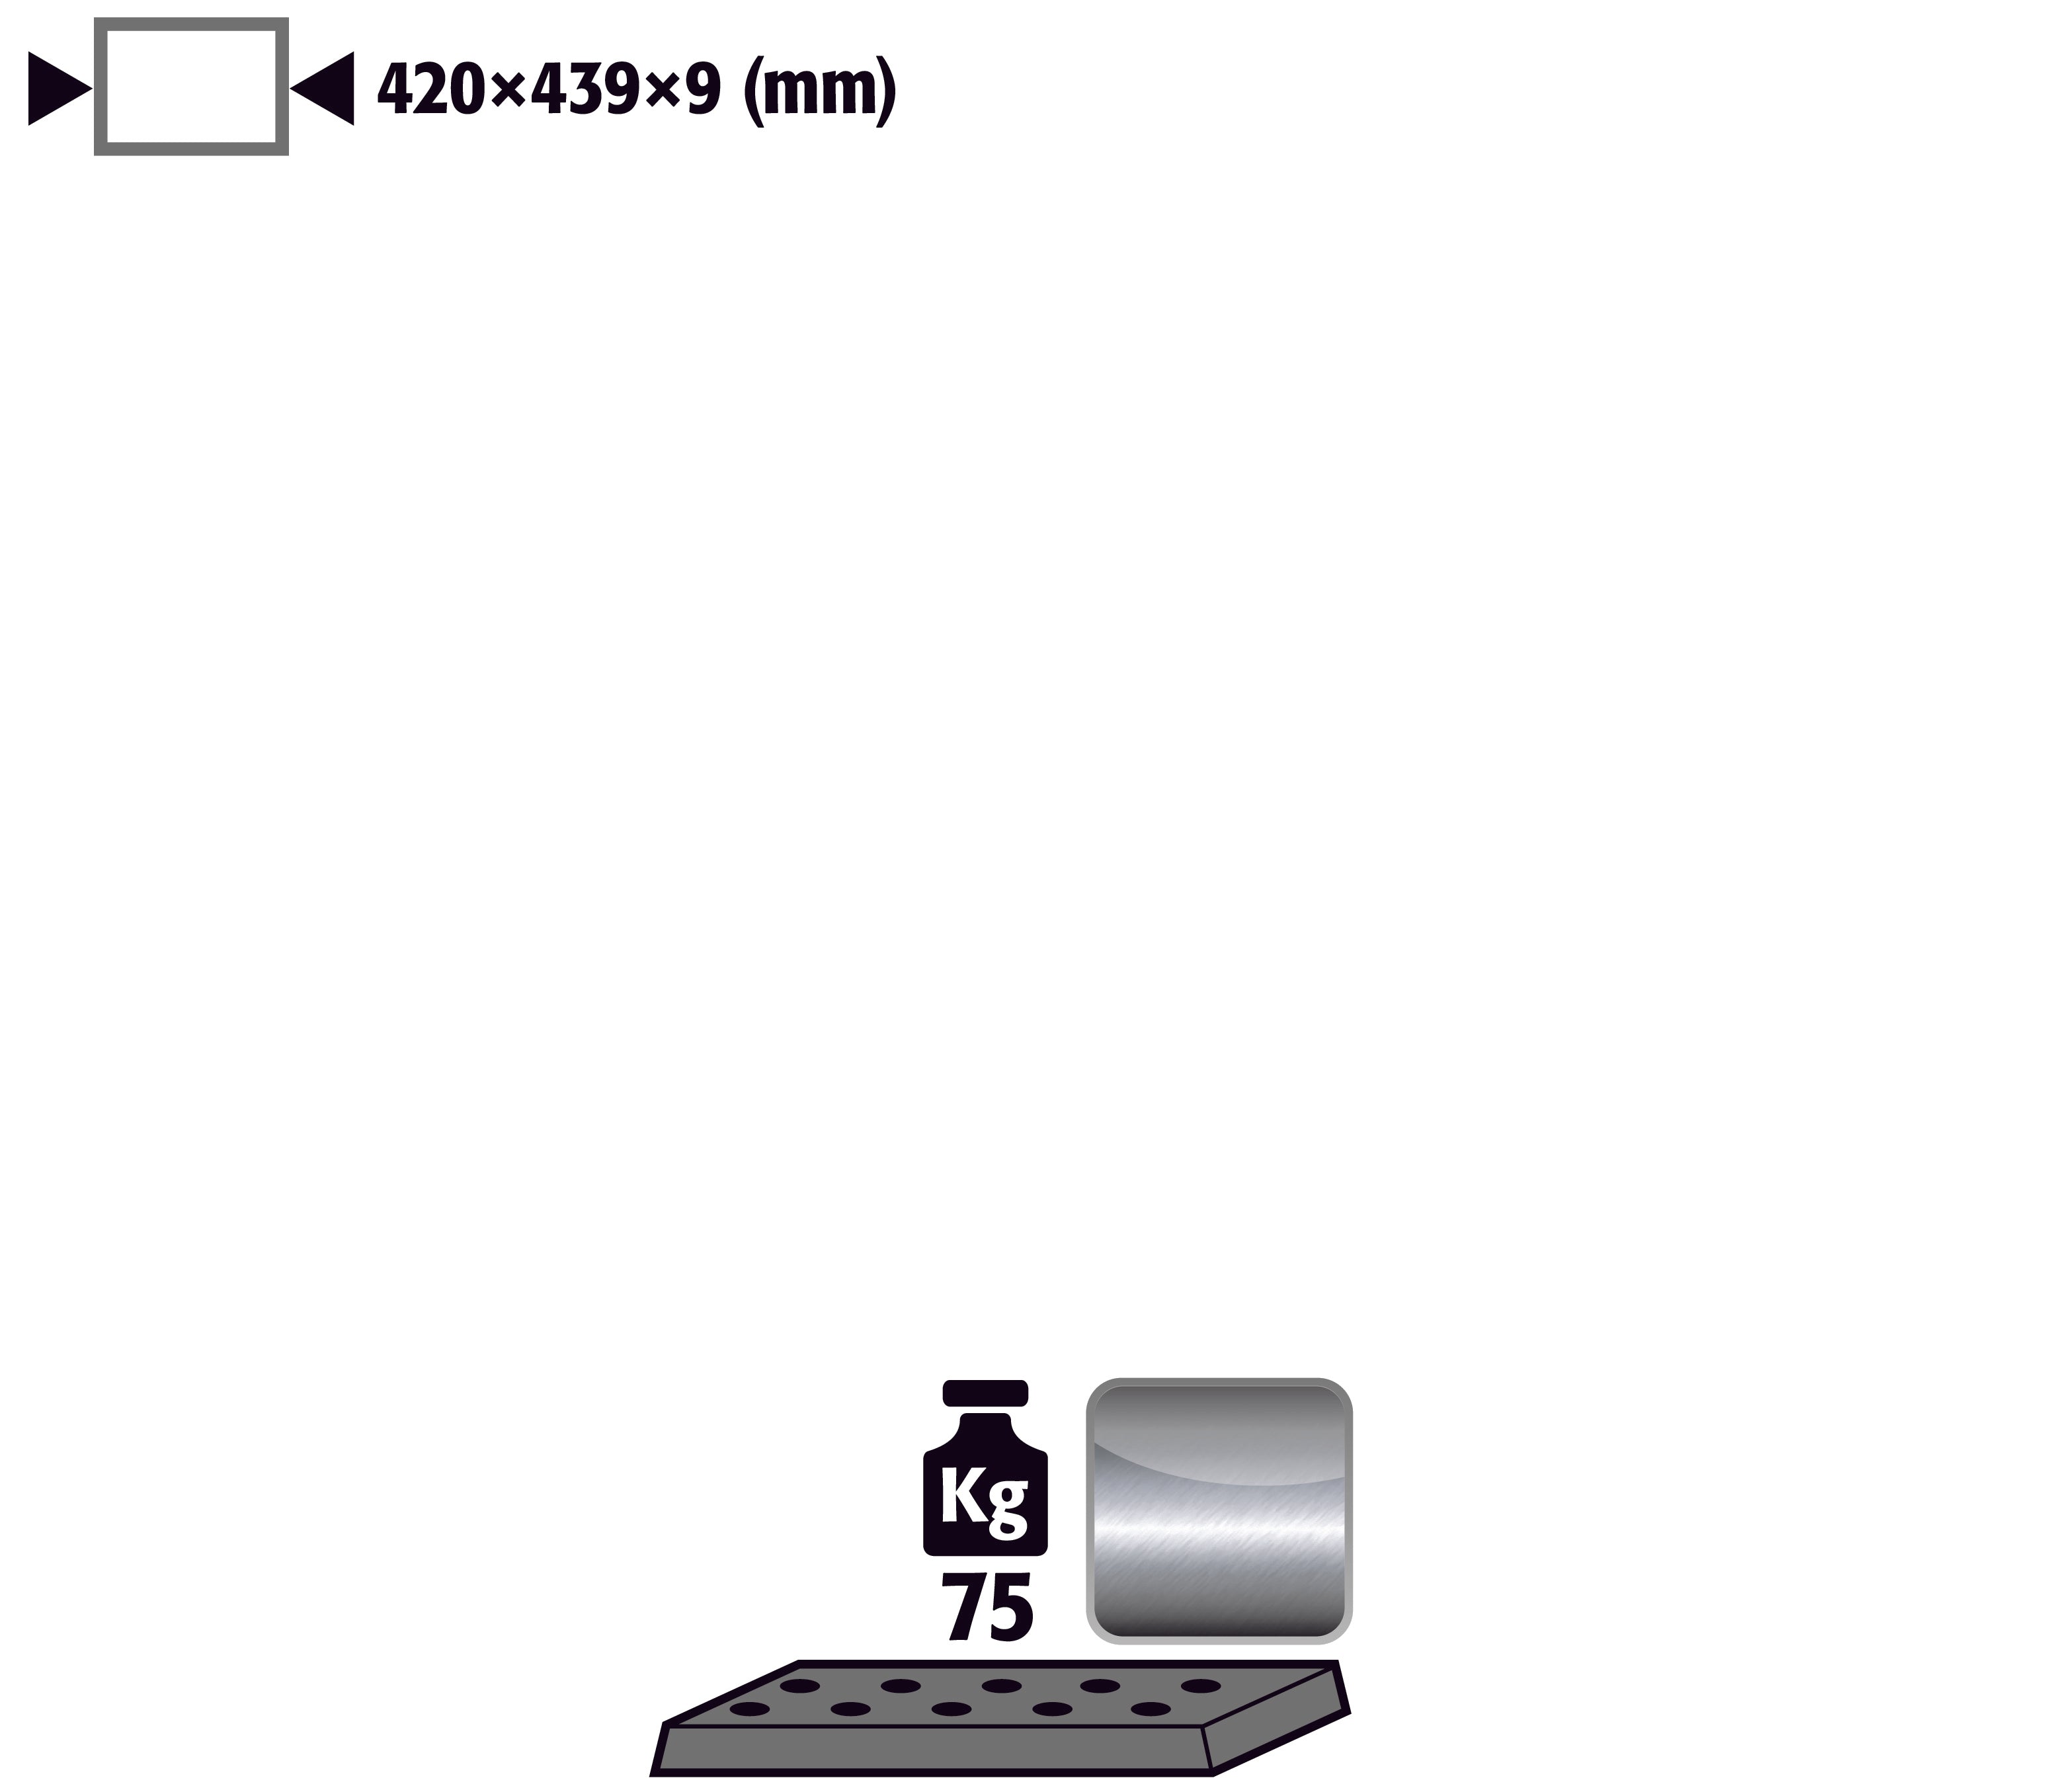 Tôle perforée standard pour modèle(s): UB90, UB30 avec largeur 590/1100 mm, acier inoxydable 1.4016 brut